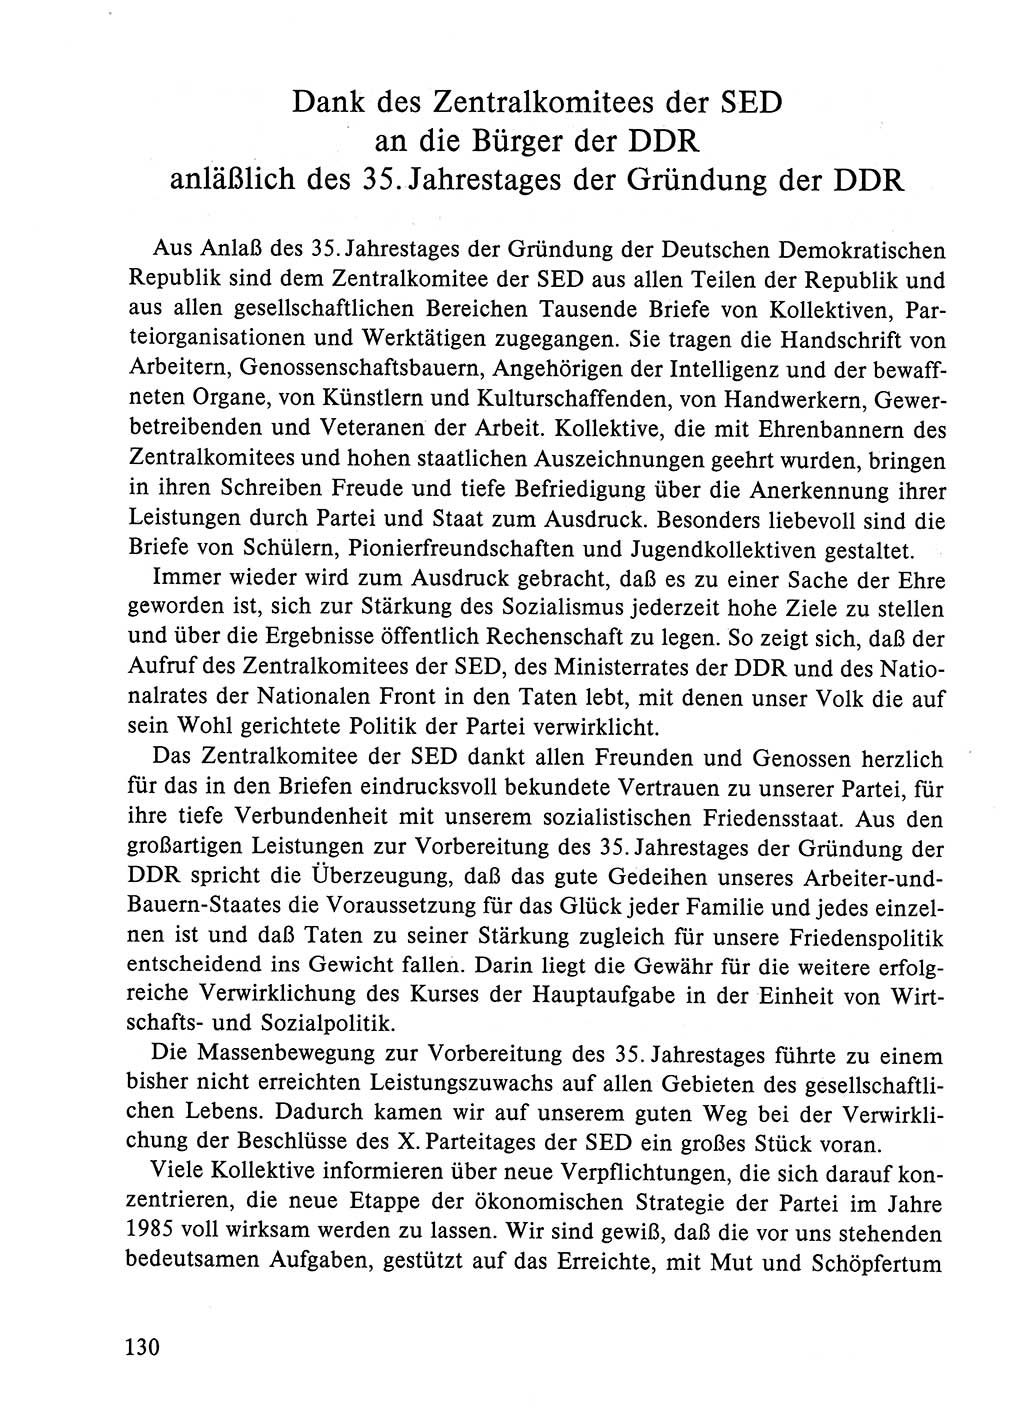 Dokumente der Sozialistischen Einheitspartei Deutschlands (SED) [Deutsche Demokratische Republik (DDR)] 1984-1985, Seite 297 (Dok. SED DDR 1984-1985, S. 297)